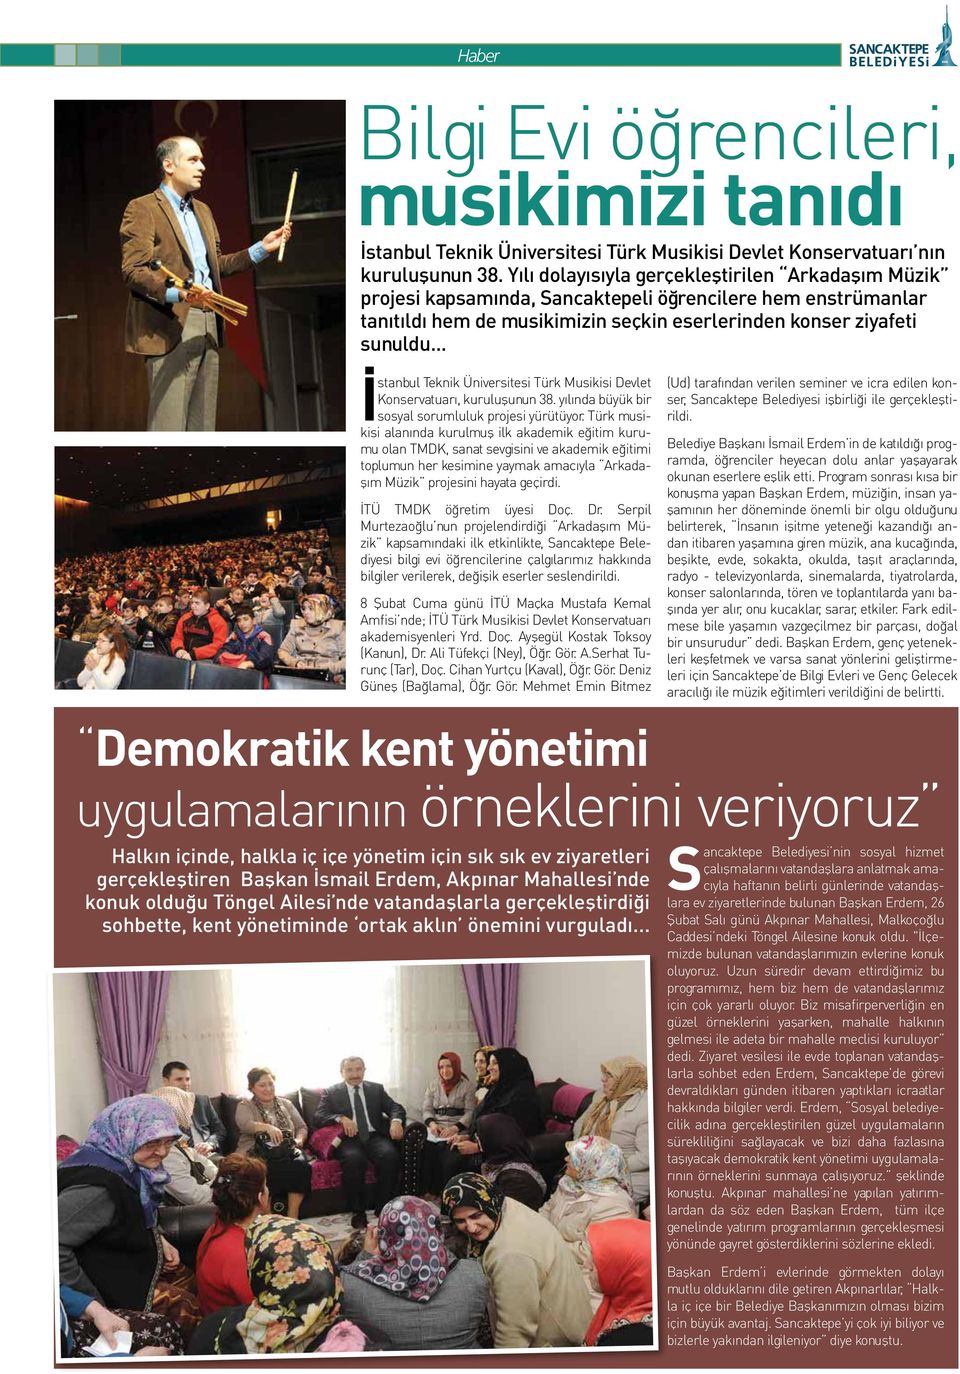 .. İstanbul Teknik Üniversitesi Türk Musikisi Devlet Konservatuarı, kuruluşunun 38. yılında büyük bir sosyal sorumluluk projesi yürütüyor.